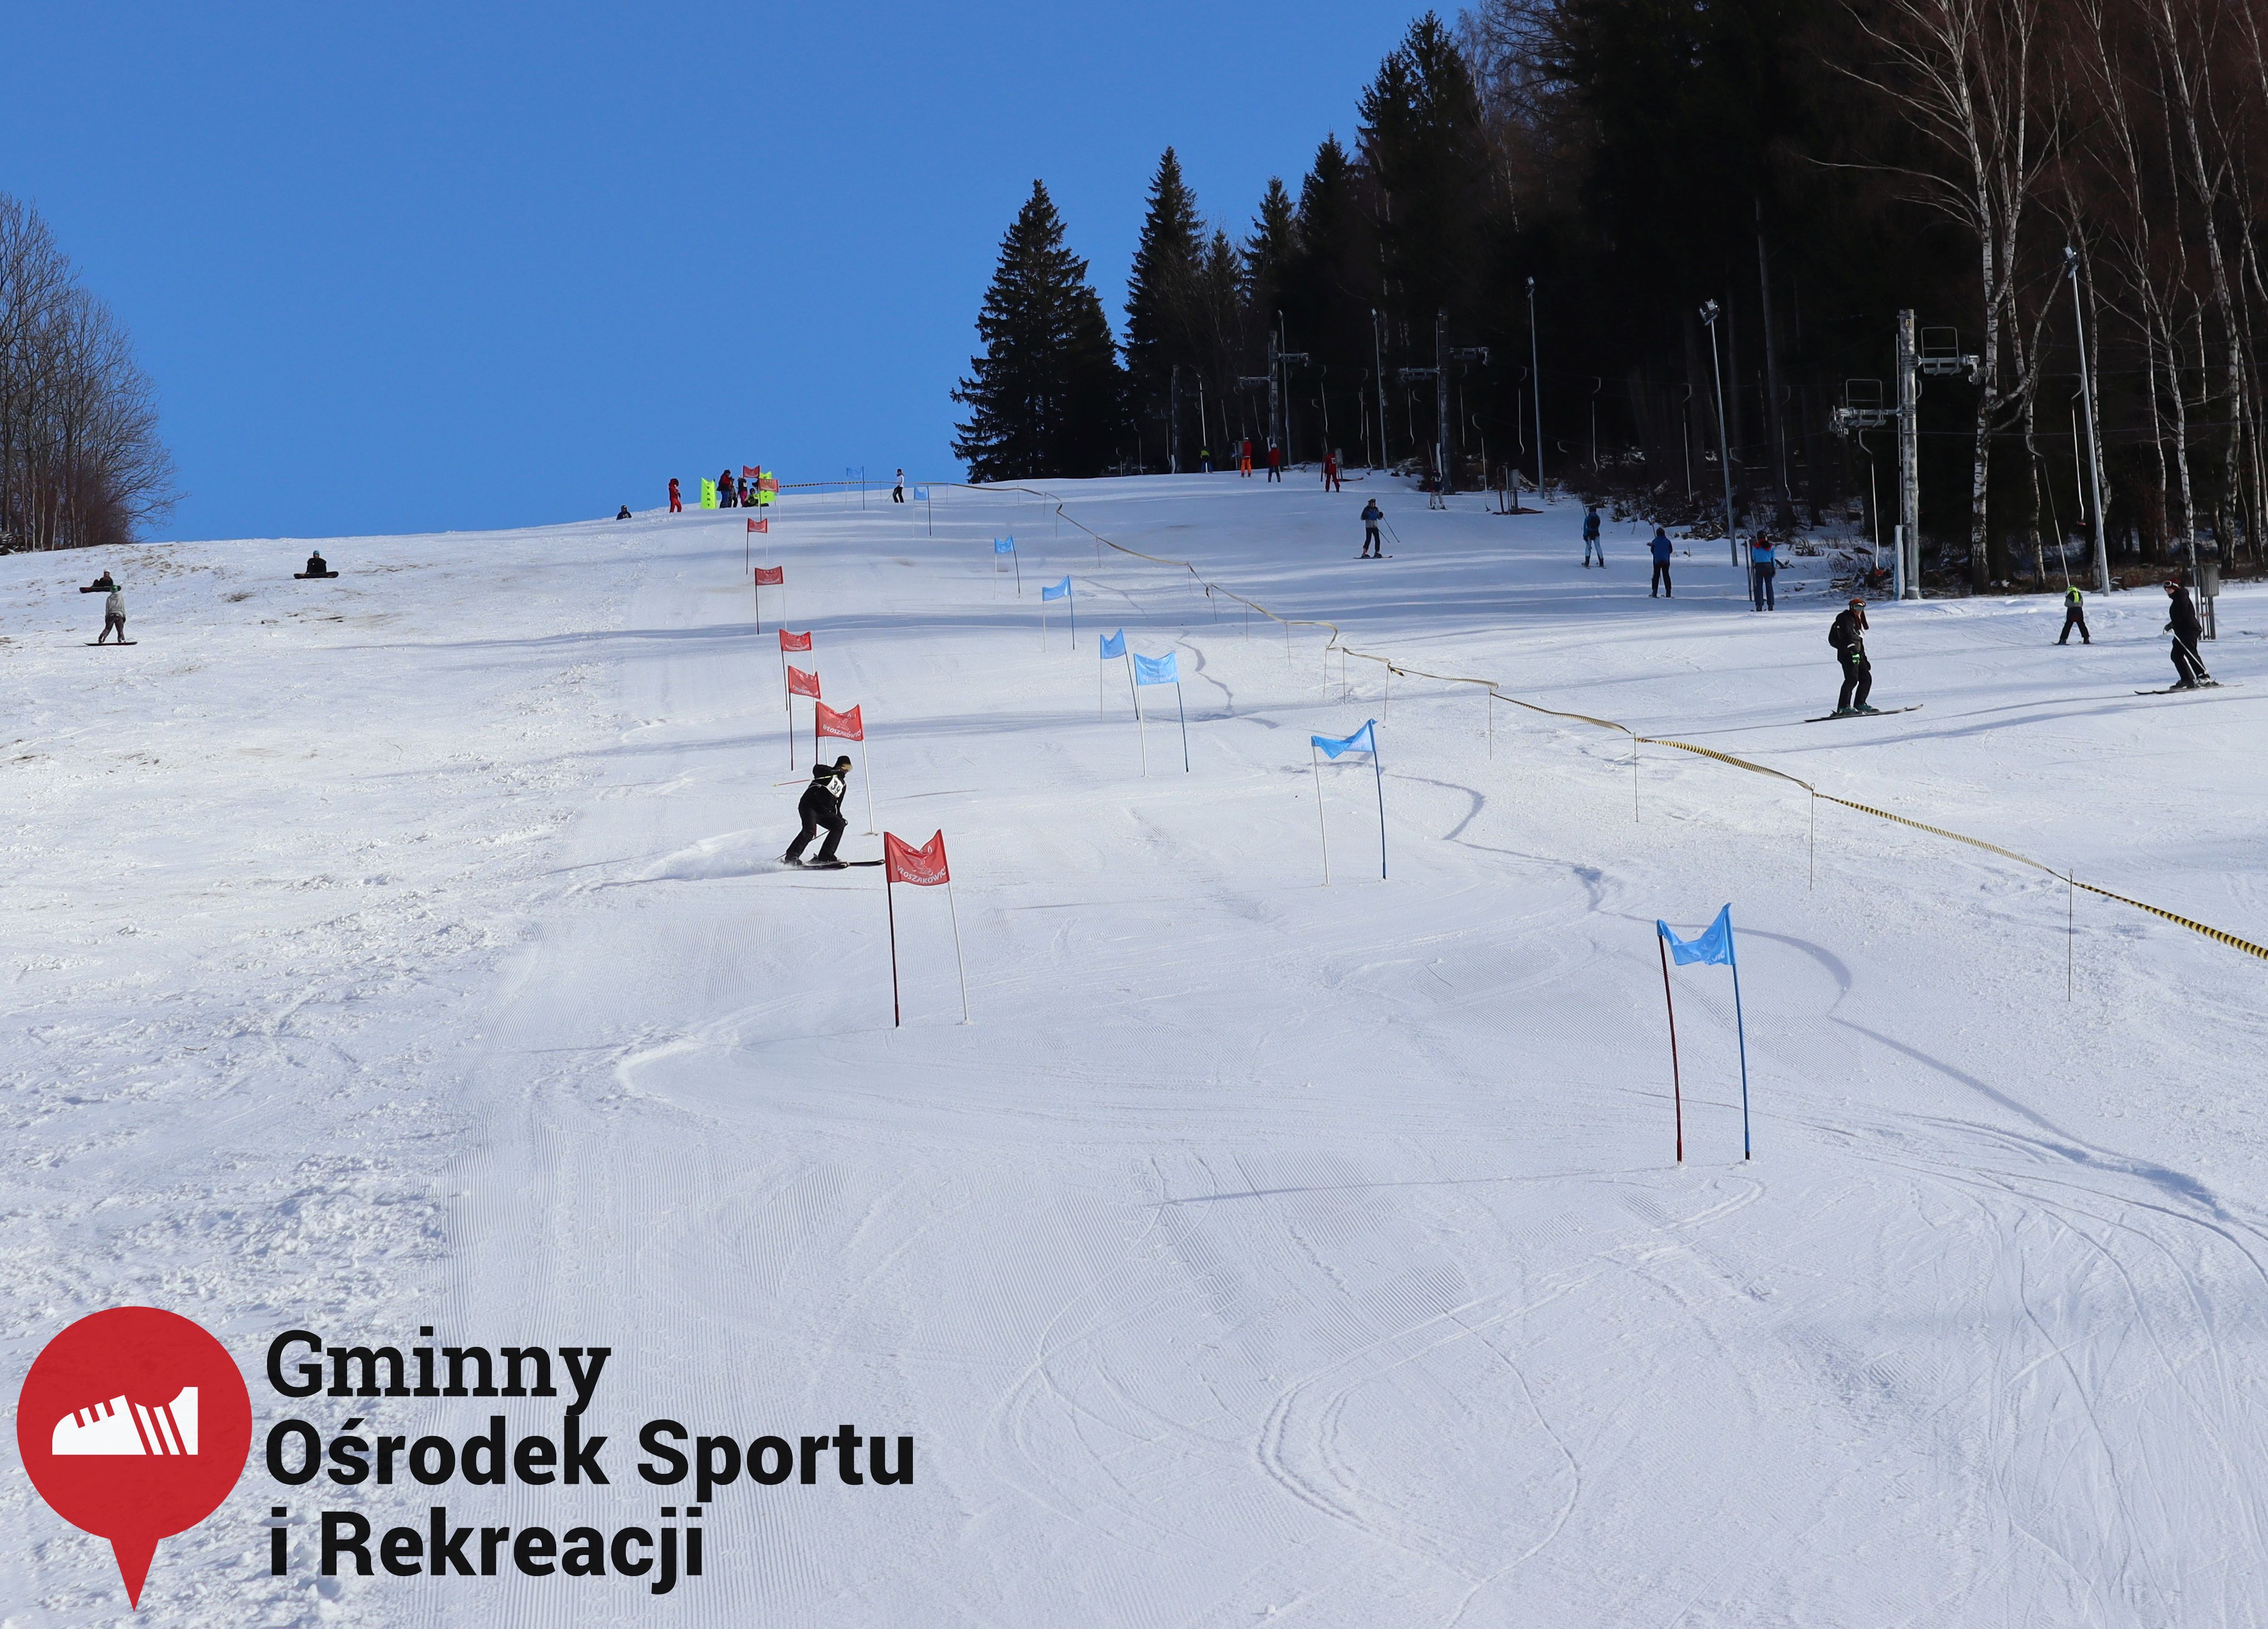 2022.02.12 - 18. Mistrzostwa Gminy Woszakowice w narciarstwie084.jpg - 1,44 MB